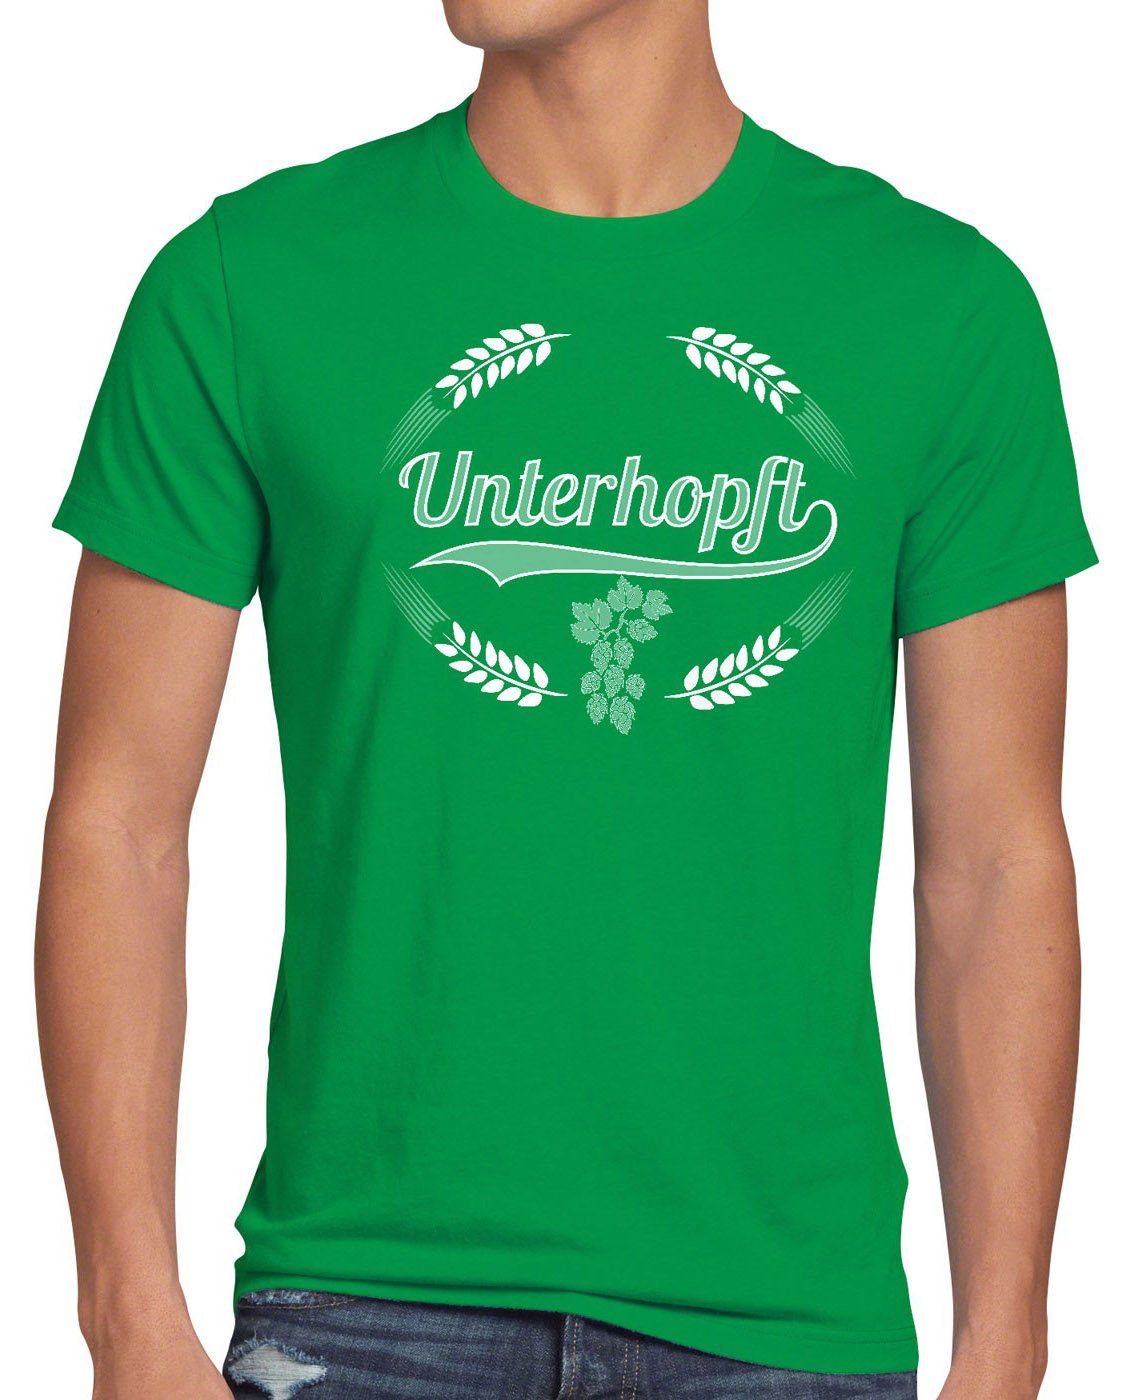 style3 Print-Shirt Herren Kult Shirt Spruch Fest Unterhopft grün Malz Bier Hopfen Funshirt T-Shirt Fun